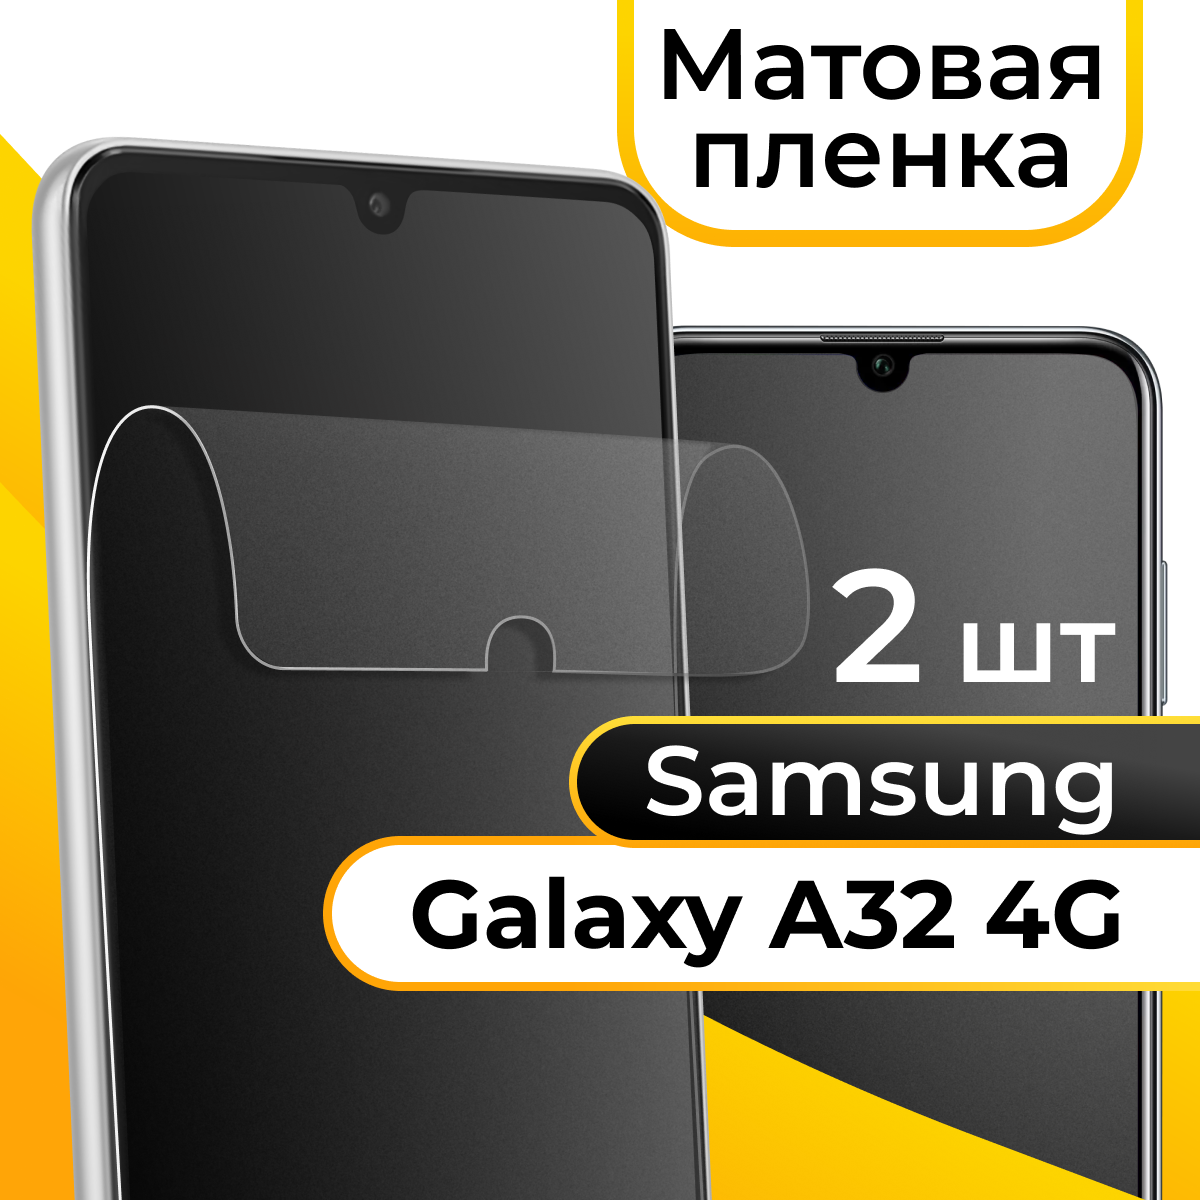 Комплект 2 шт. Матовая пленка для смартфона Samsung Galaxy A32 4G / Защитная противоударная пленка на телефон Самсунг Галакси А32 4Г/ Гидрогелевая пленка